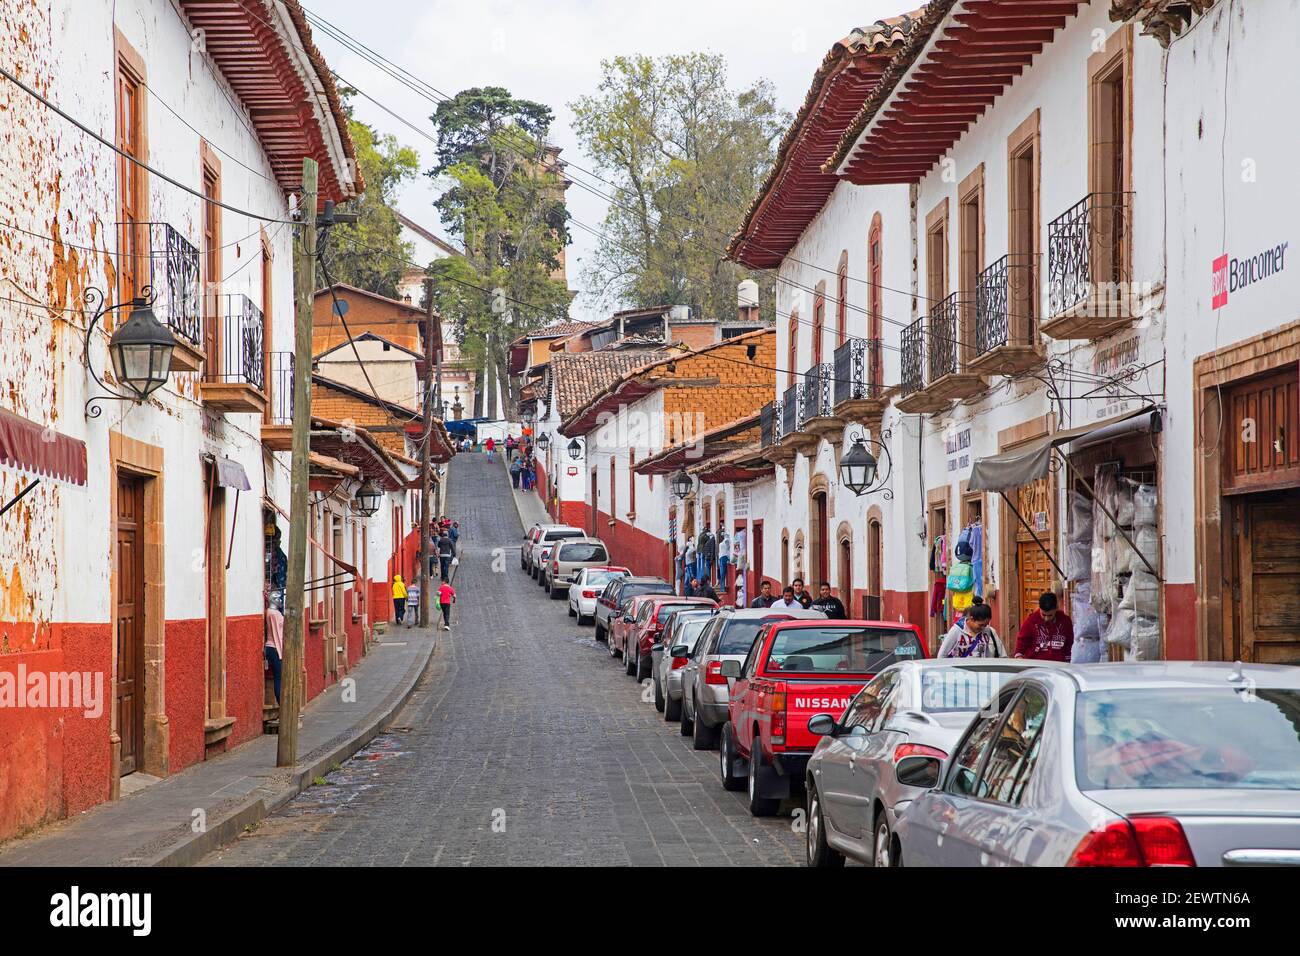 Traditionelle koloniale indigene rot-weiße lehmziegelhäuser und Geschäfte in der Stadt Pátzcuaro, Michoacán, Mexiko Stockfoto